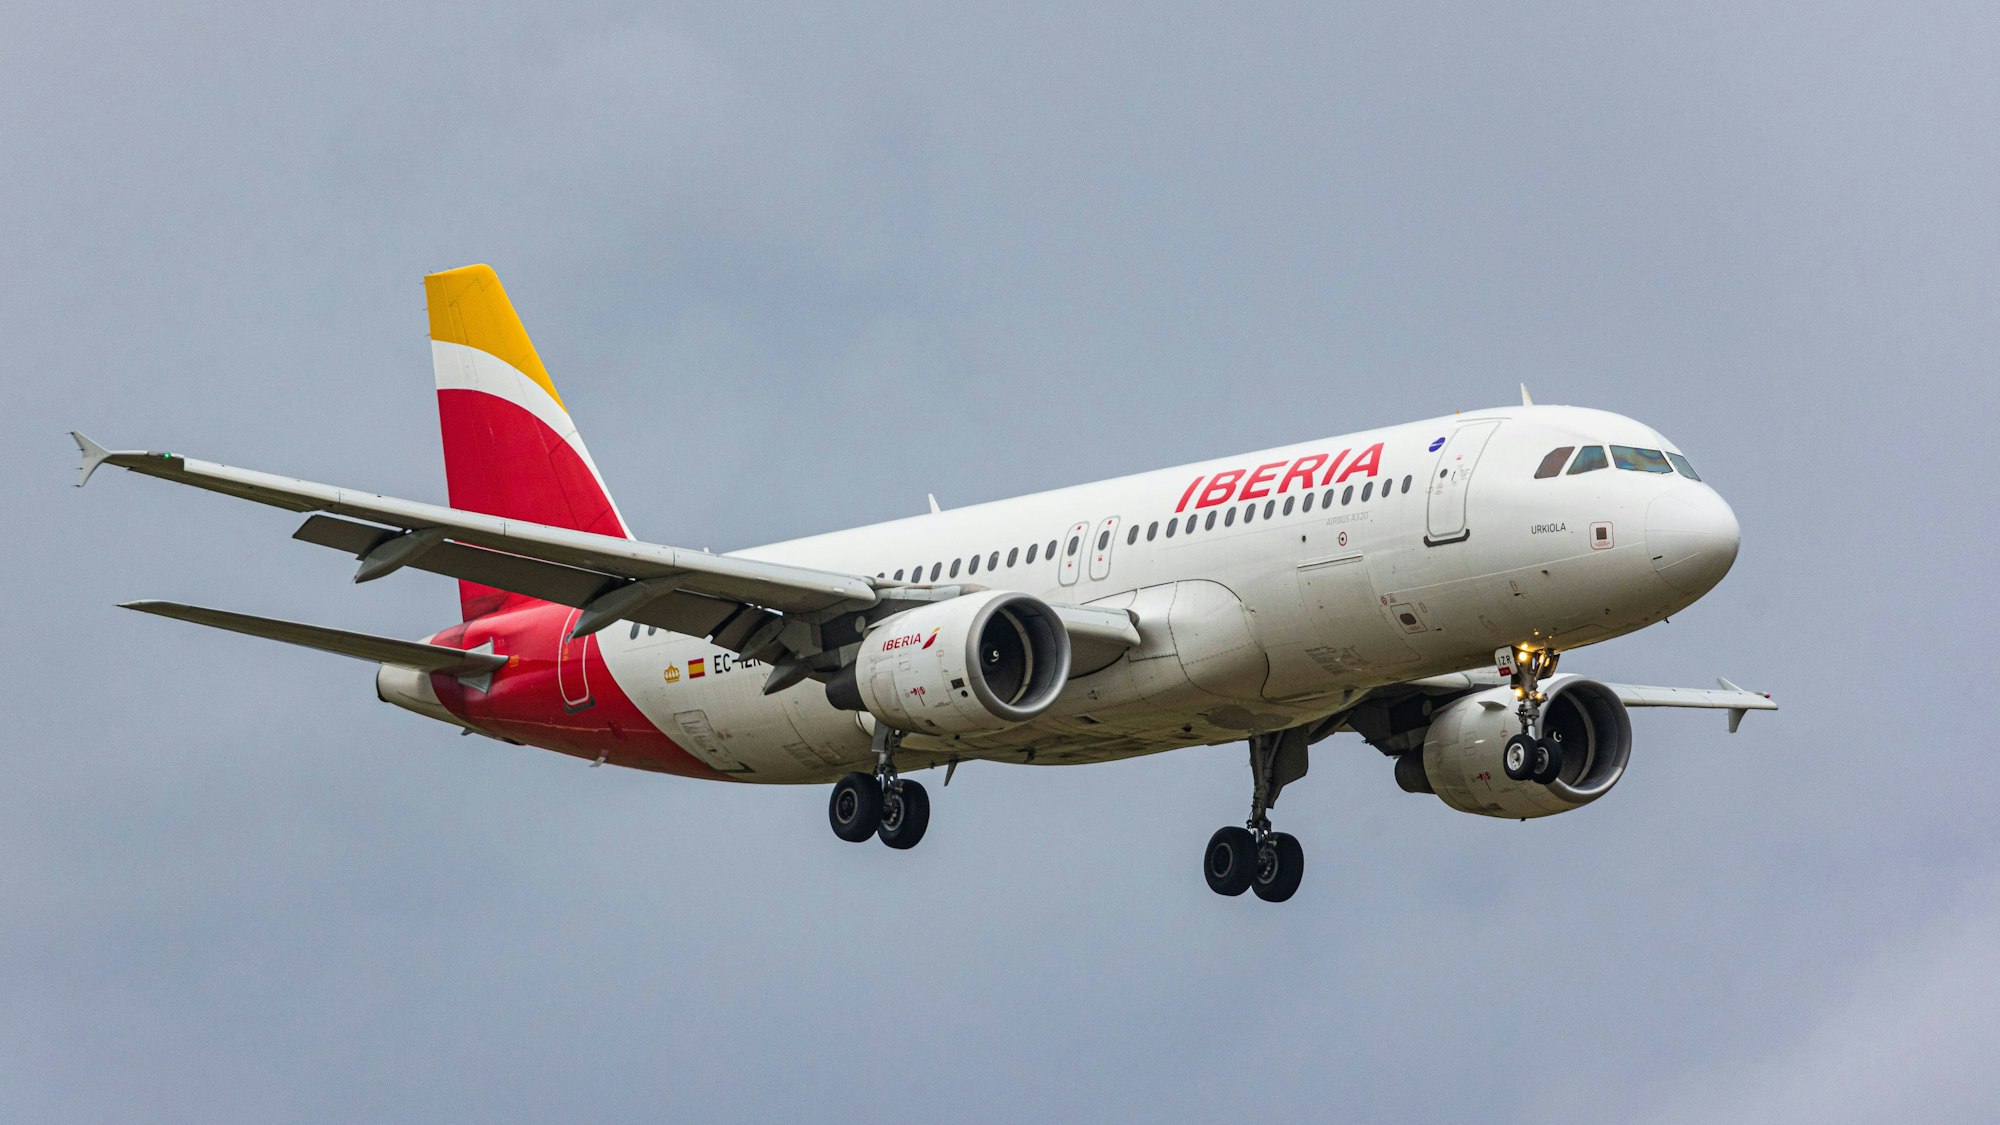 Ein Airbus A320 der spanischen Fluggesellschaft Iberia befindet sich im Landeanflug. Die Maschine hatte kurz zuvor einen Luftnotfall gemeldet. (Symbolbild)